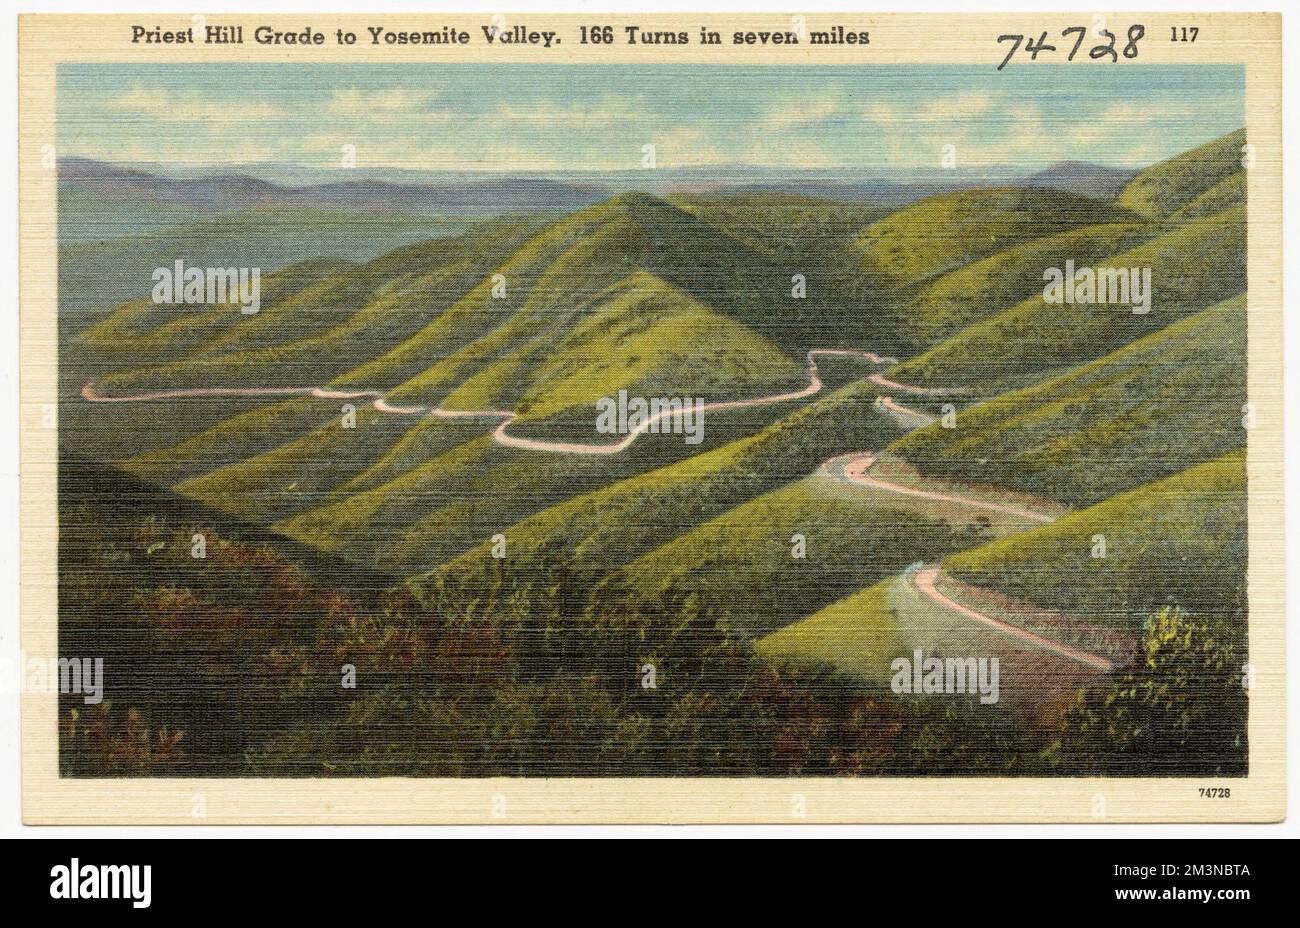 Priest Hill Grade nach Yosemite Valley. 166 Kurven in 7 Meilen, Täler, Straßen, Tichnor Brothers Collection, Postkarten der Vereinigten Staaten Stockfoto